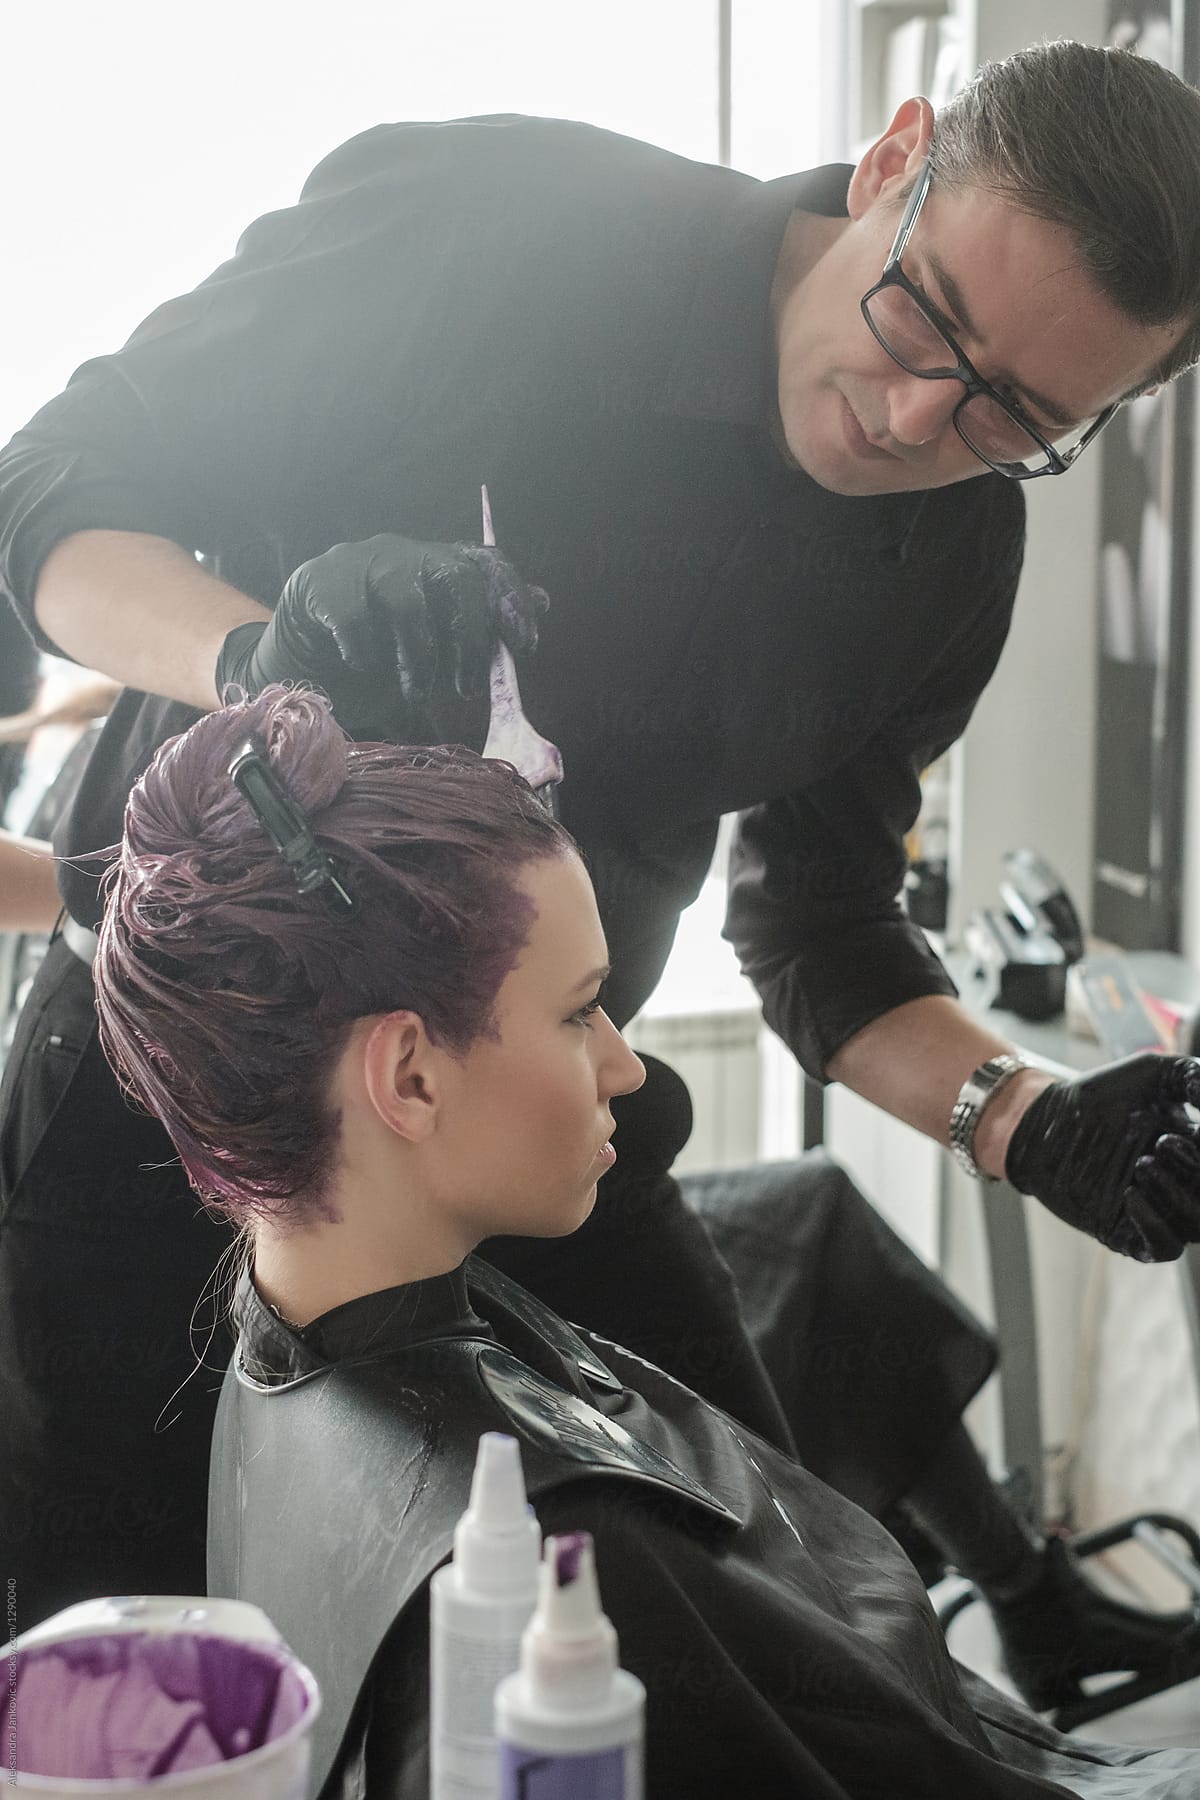 Hairdresser Appying Hair Dye On Customer's Hair In The Salon